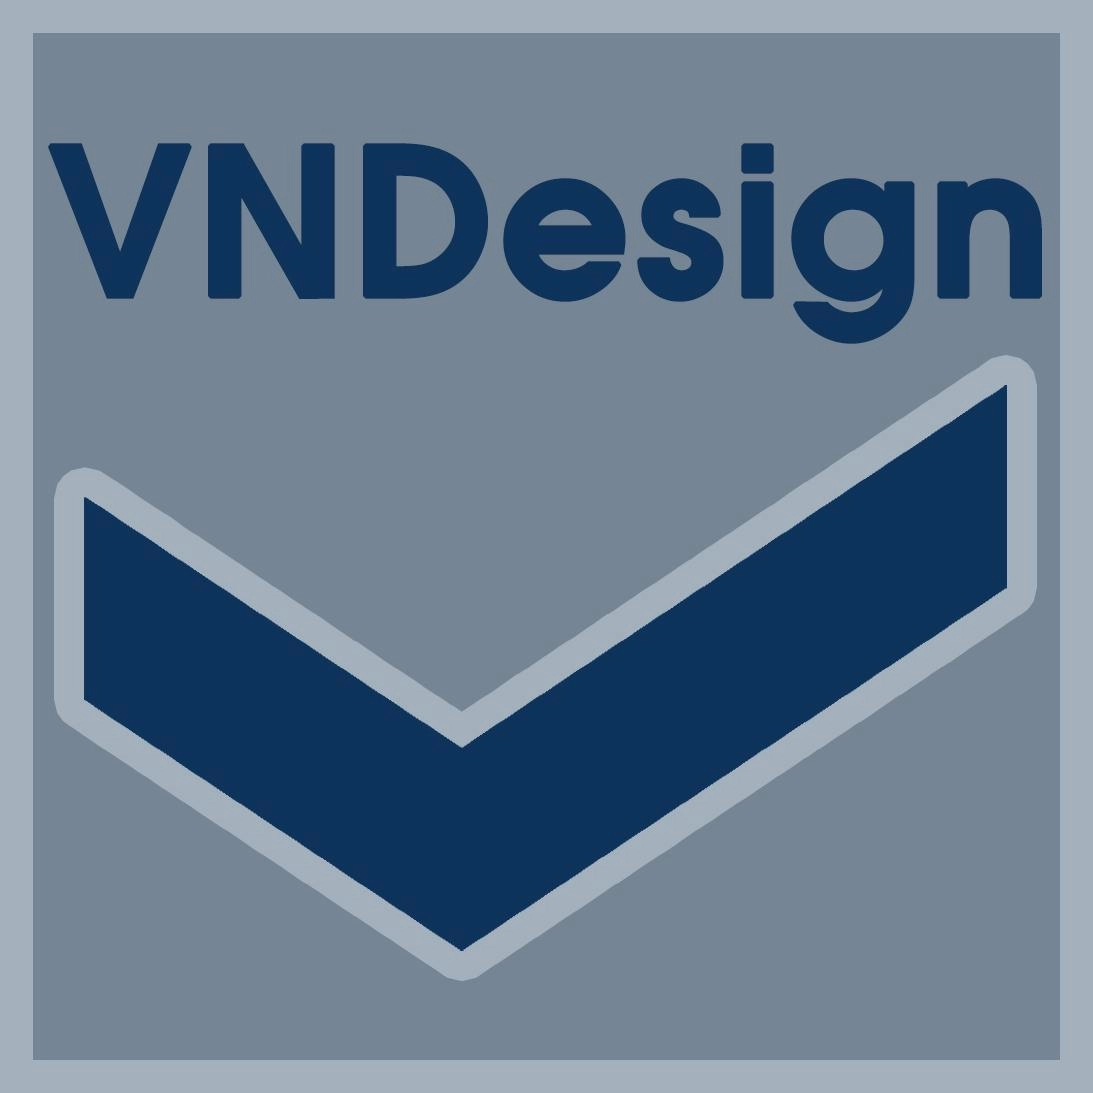 14422-logo-vndesign.jpg